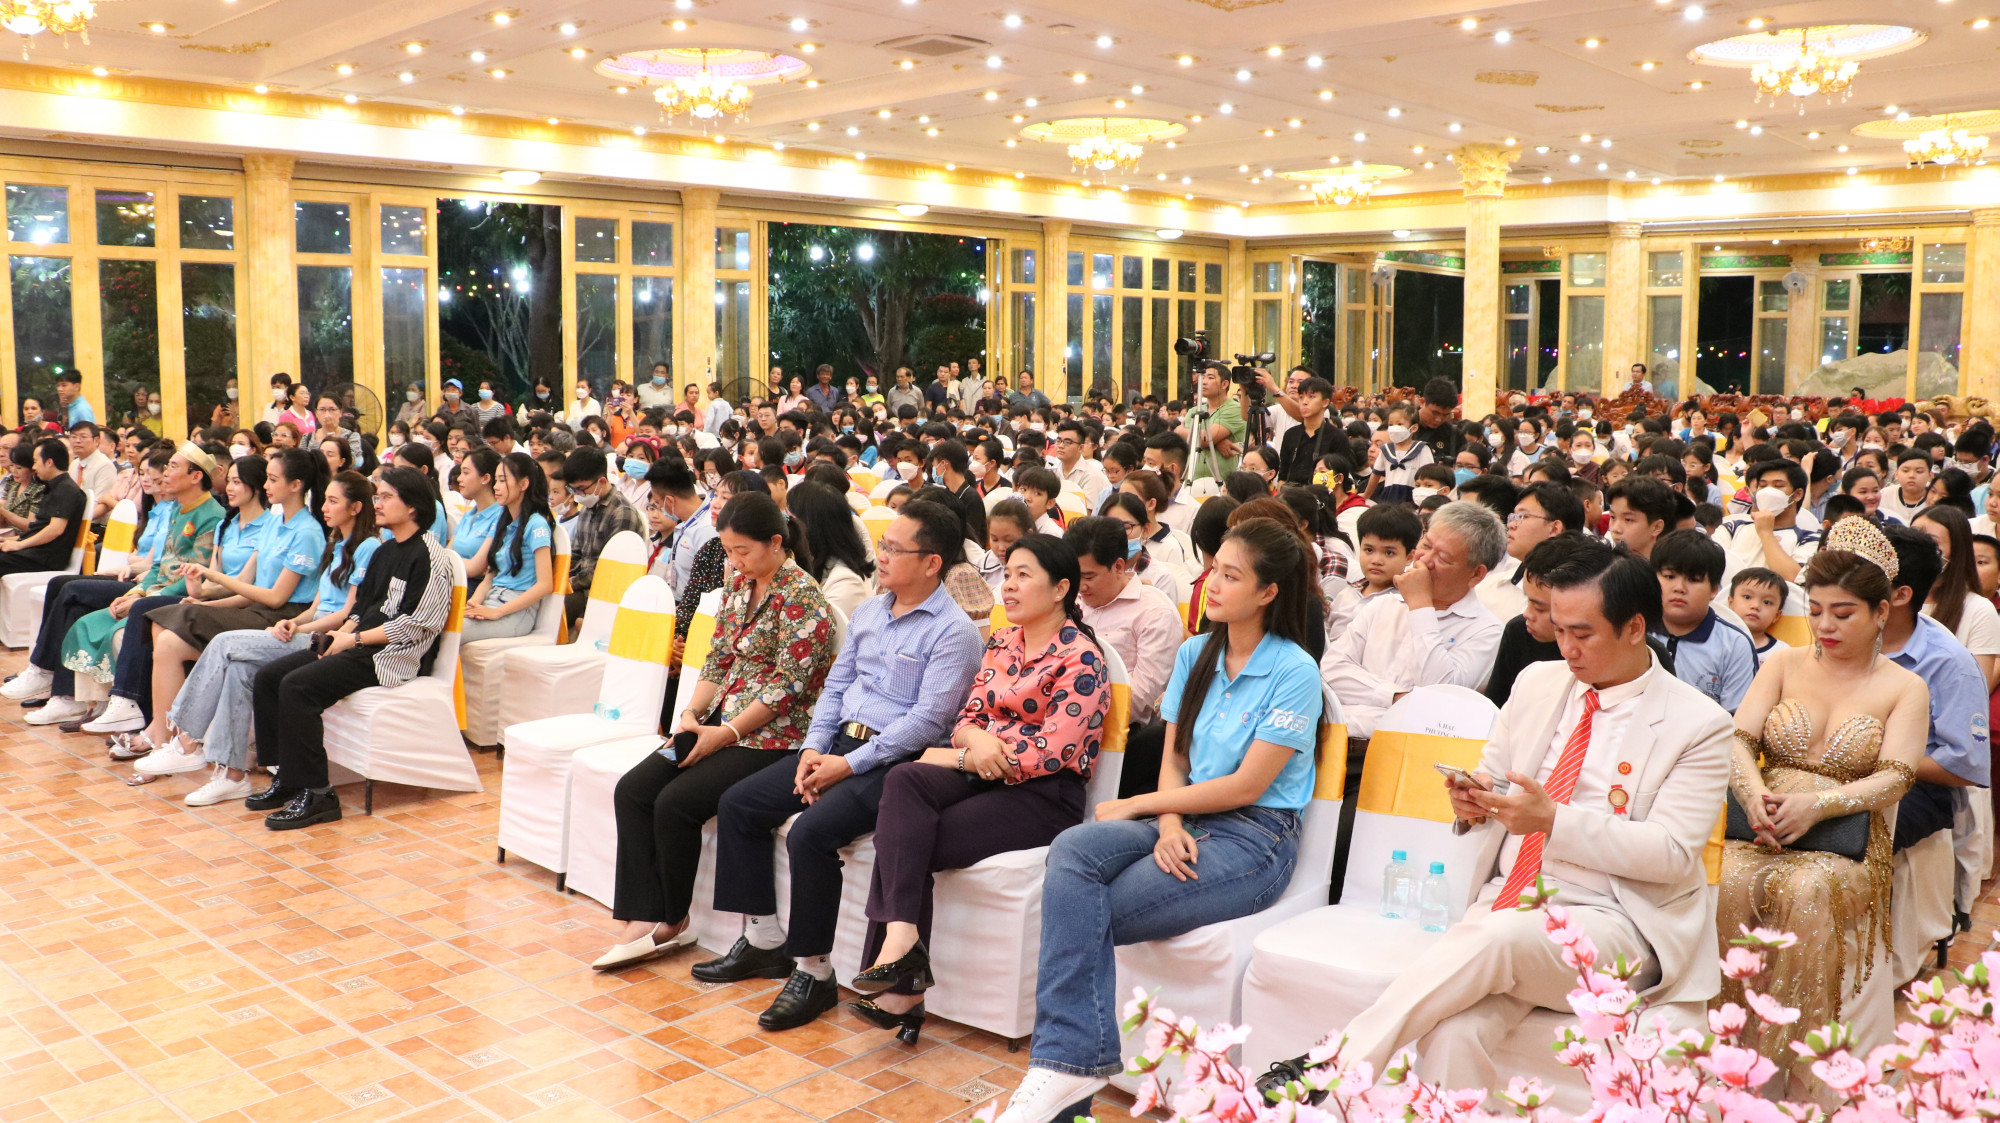 500 trẻ em mồ côi cùng các bật phụ huynh đã đến tham dự chương trình